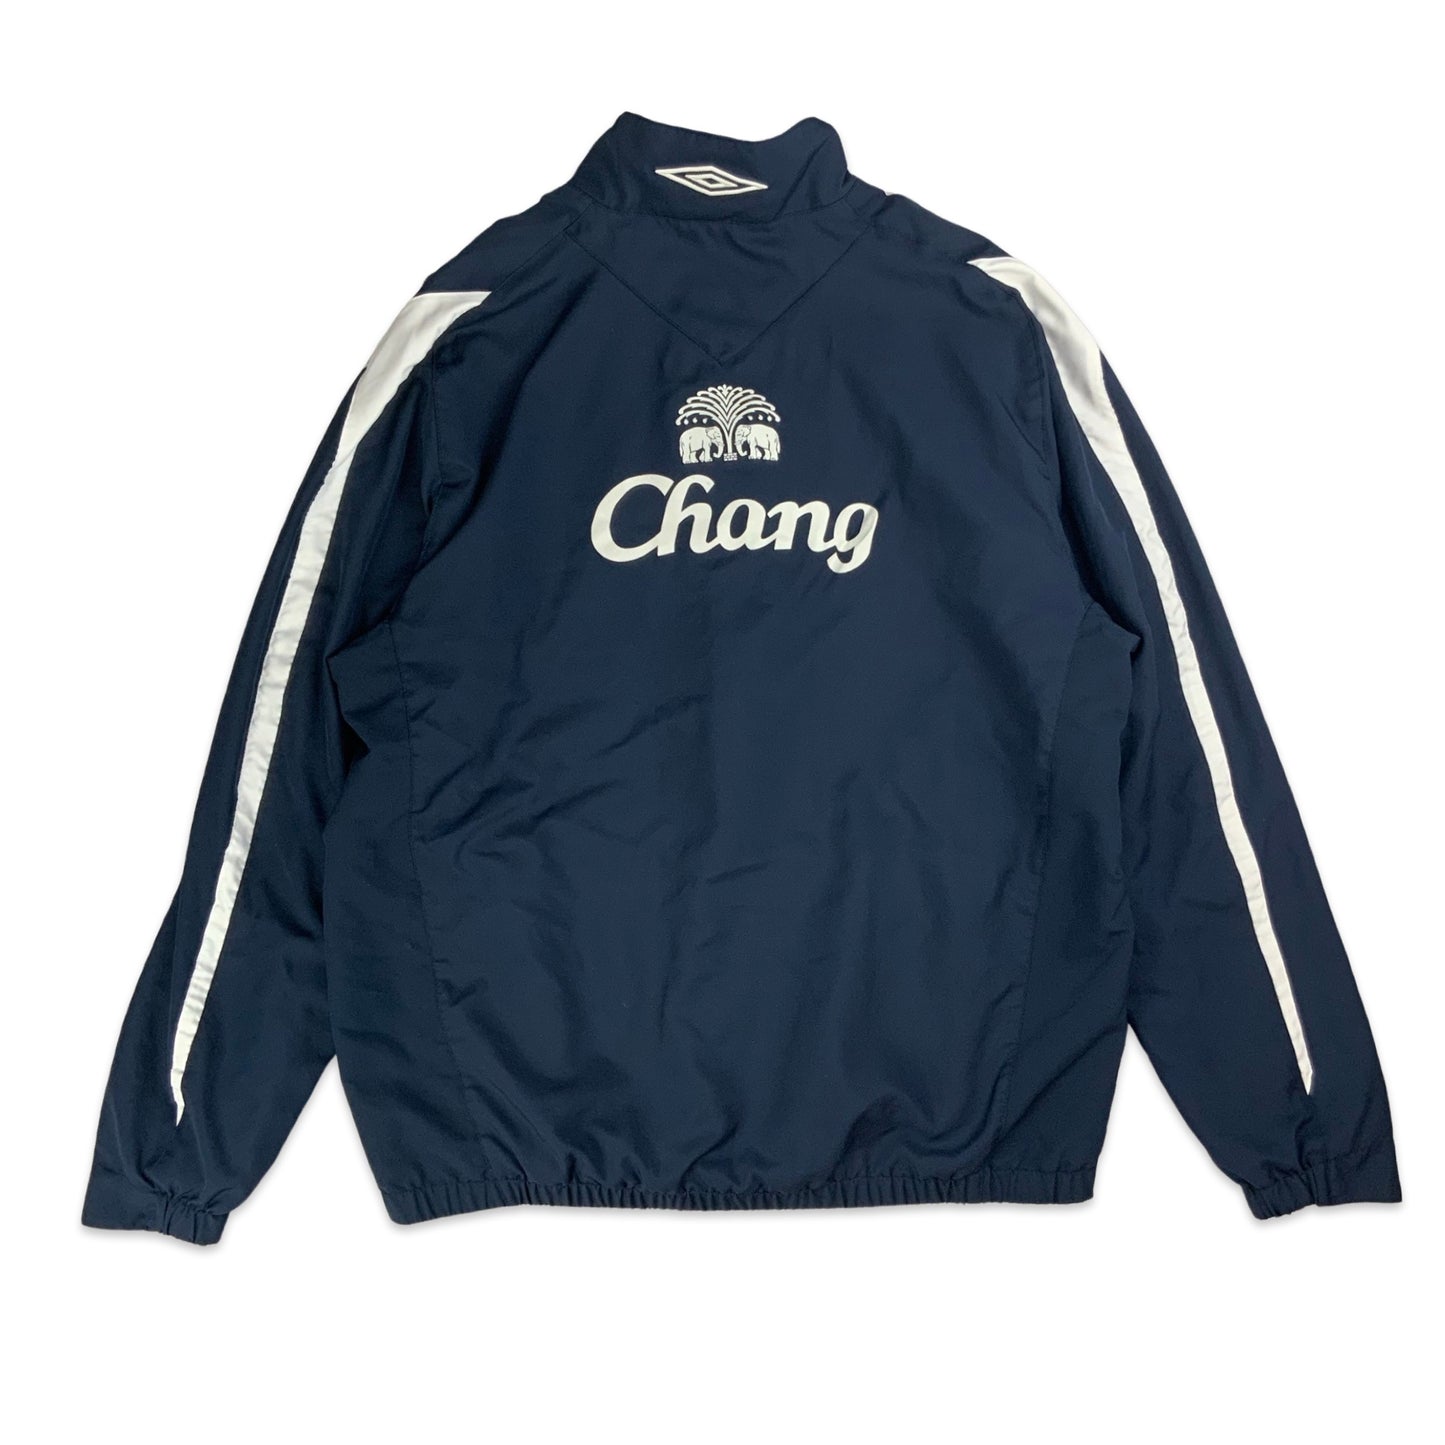 Preloved Umbro Everton FC Track Jacket L